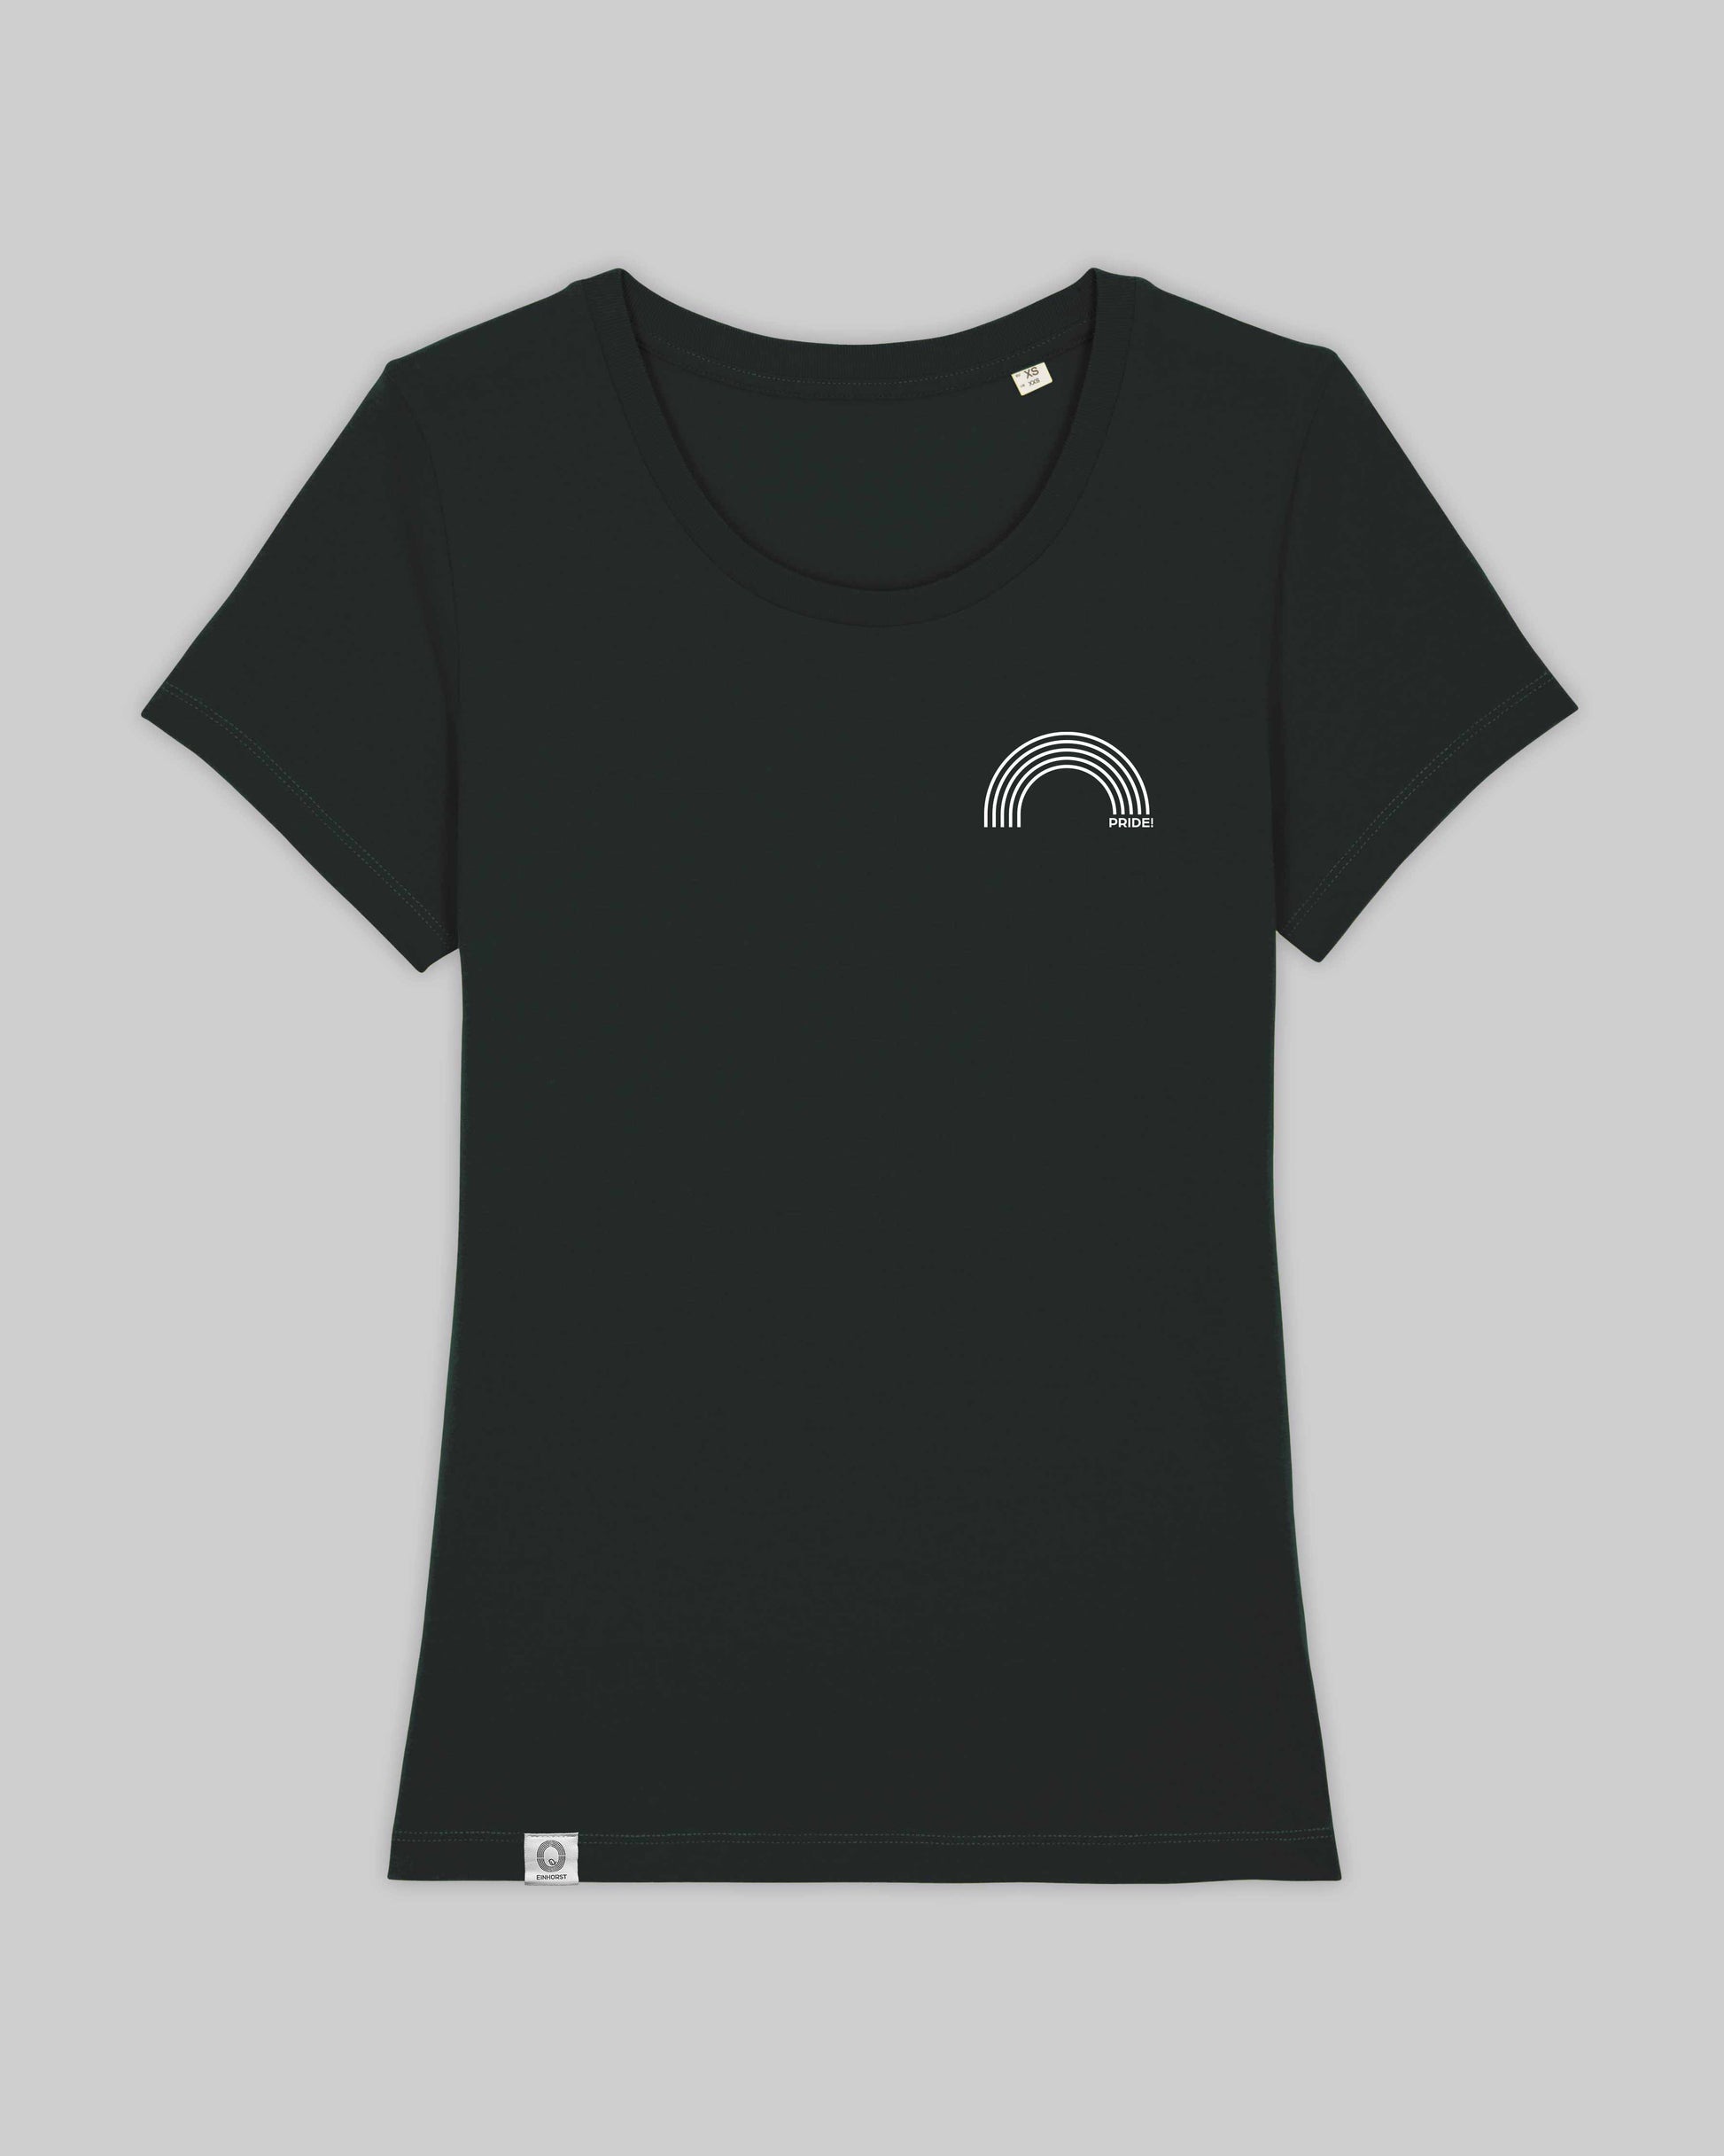 EINHORST® Organic Shirt tailliert in "Schwarz" mit dem Motiv "pride Regenbogen" in der Kombination weißer Regenbogen mit weißer Schrift, Bild von Shirt von vorne